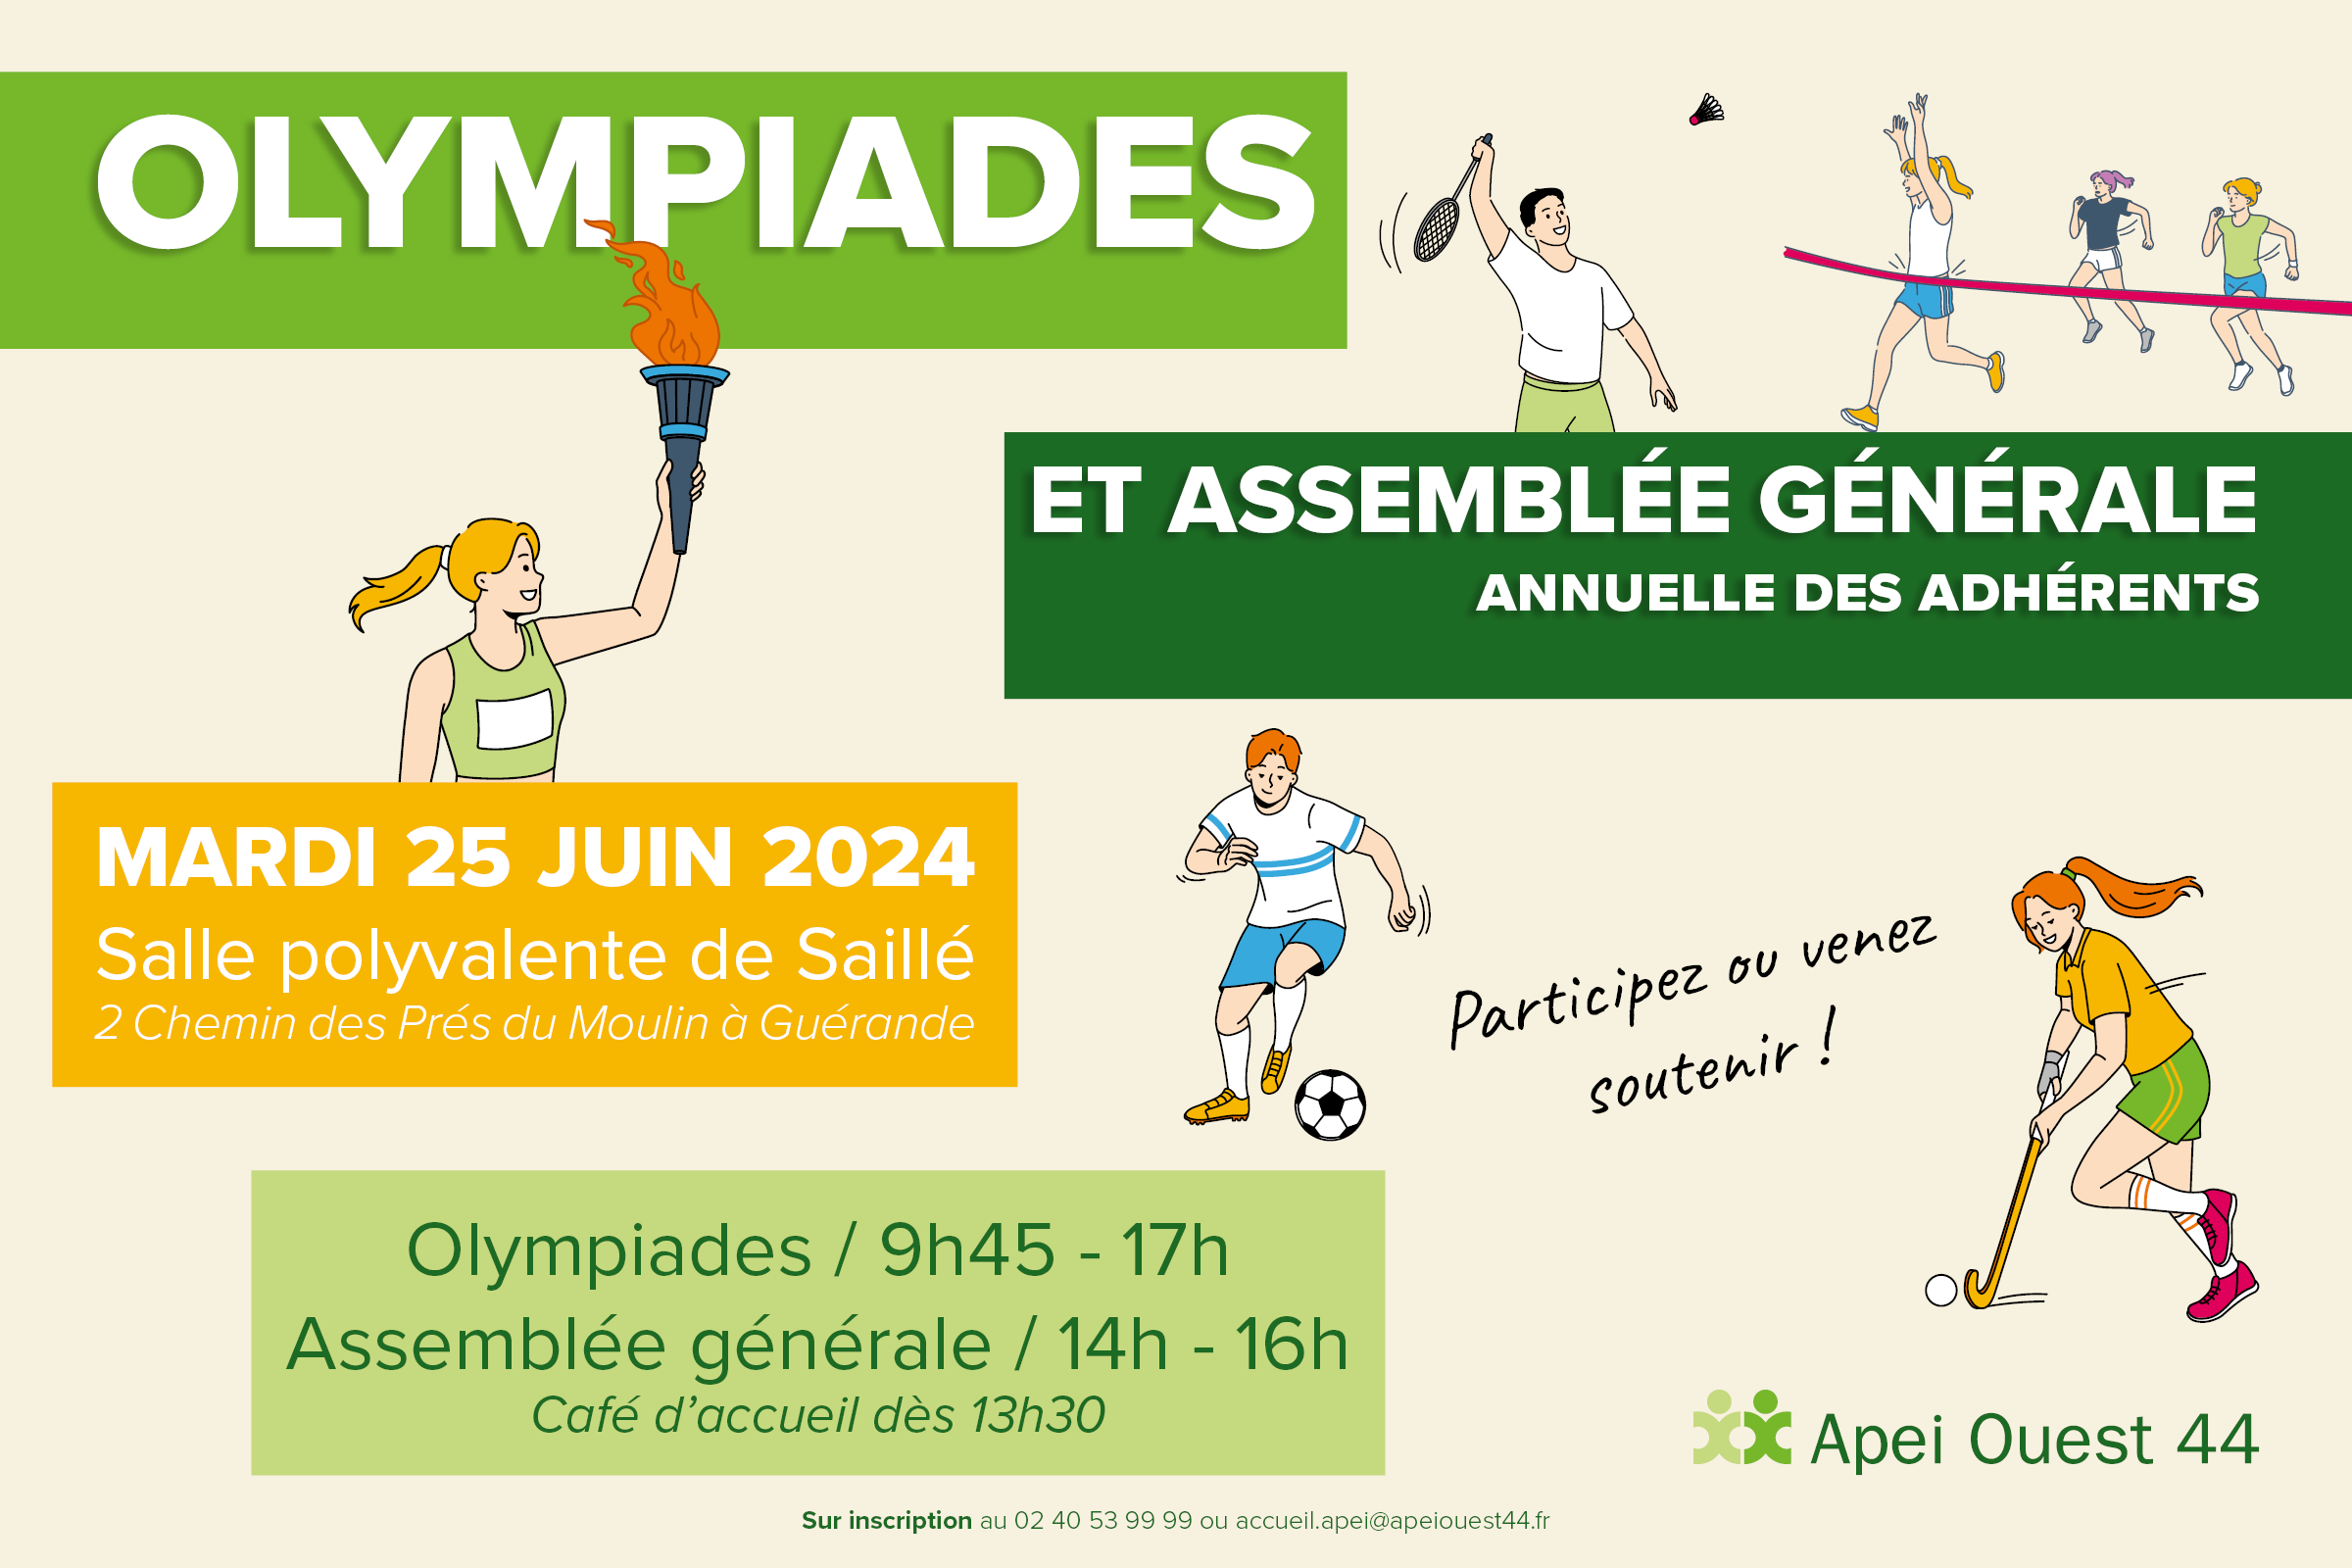 Olympiades - Assemblée générale annuelle des adhérents 2024